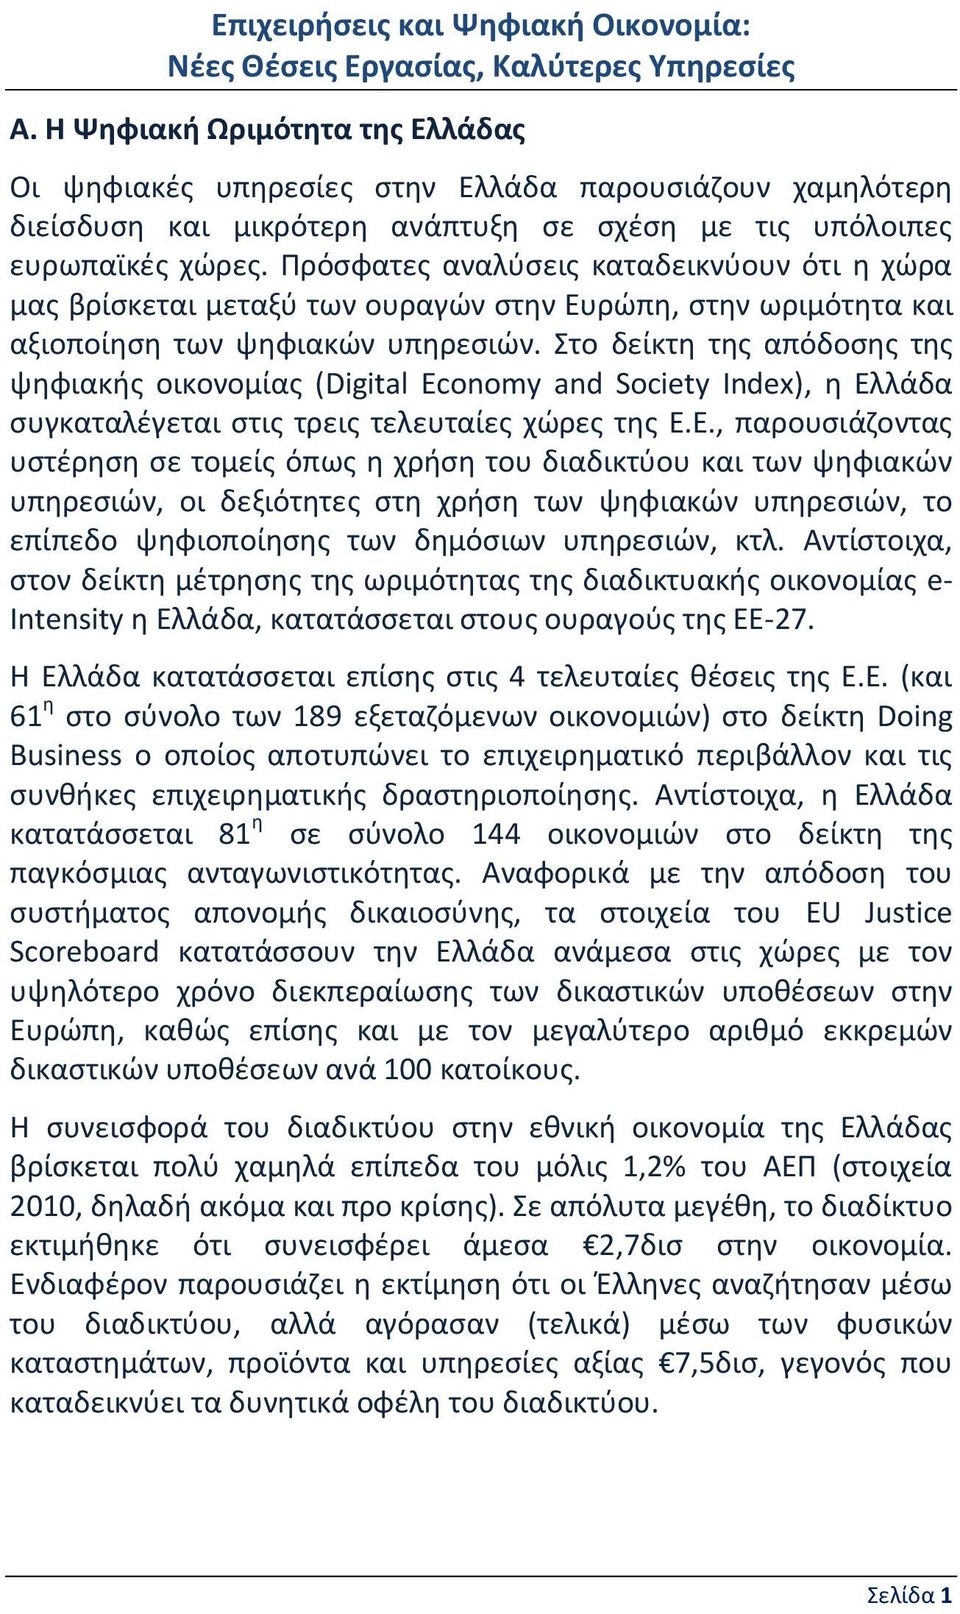 Στο δείκτη της απόδοσης της ψηφιακής οικονομίας (Digital Economy and Society Index), η Ελ